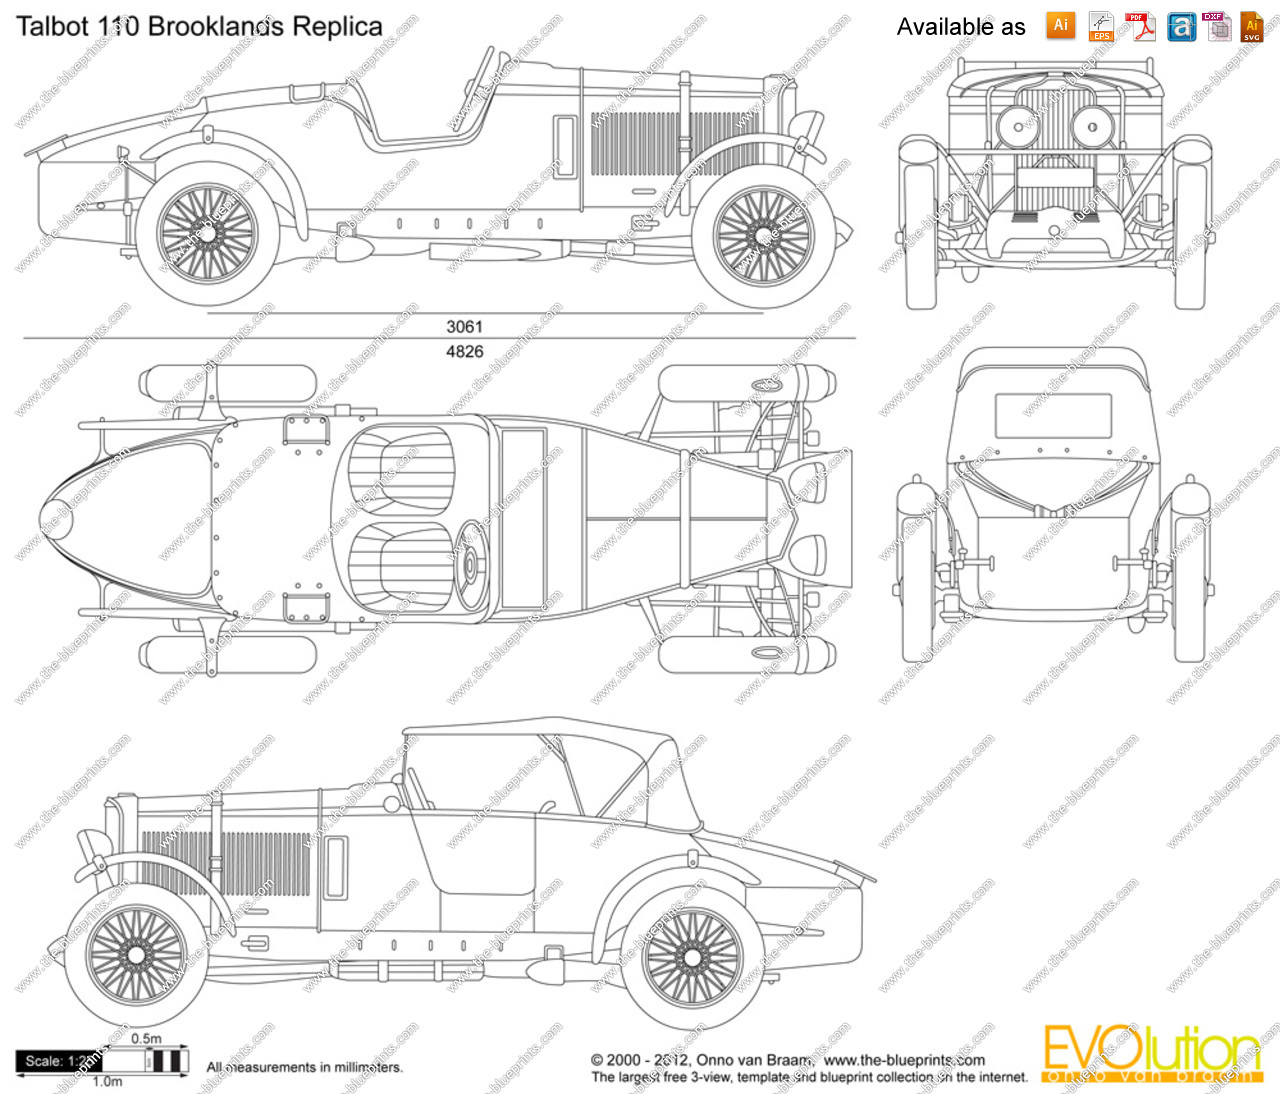 The-Blueprints.com - Vector Drawing - Talbot 110 Brooklands Replica